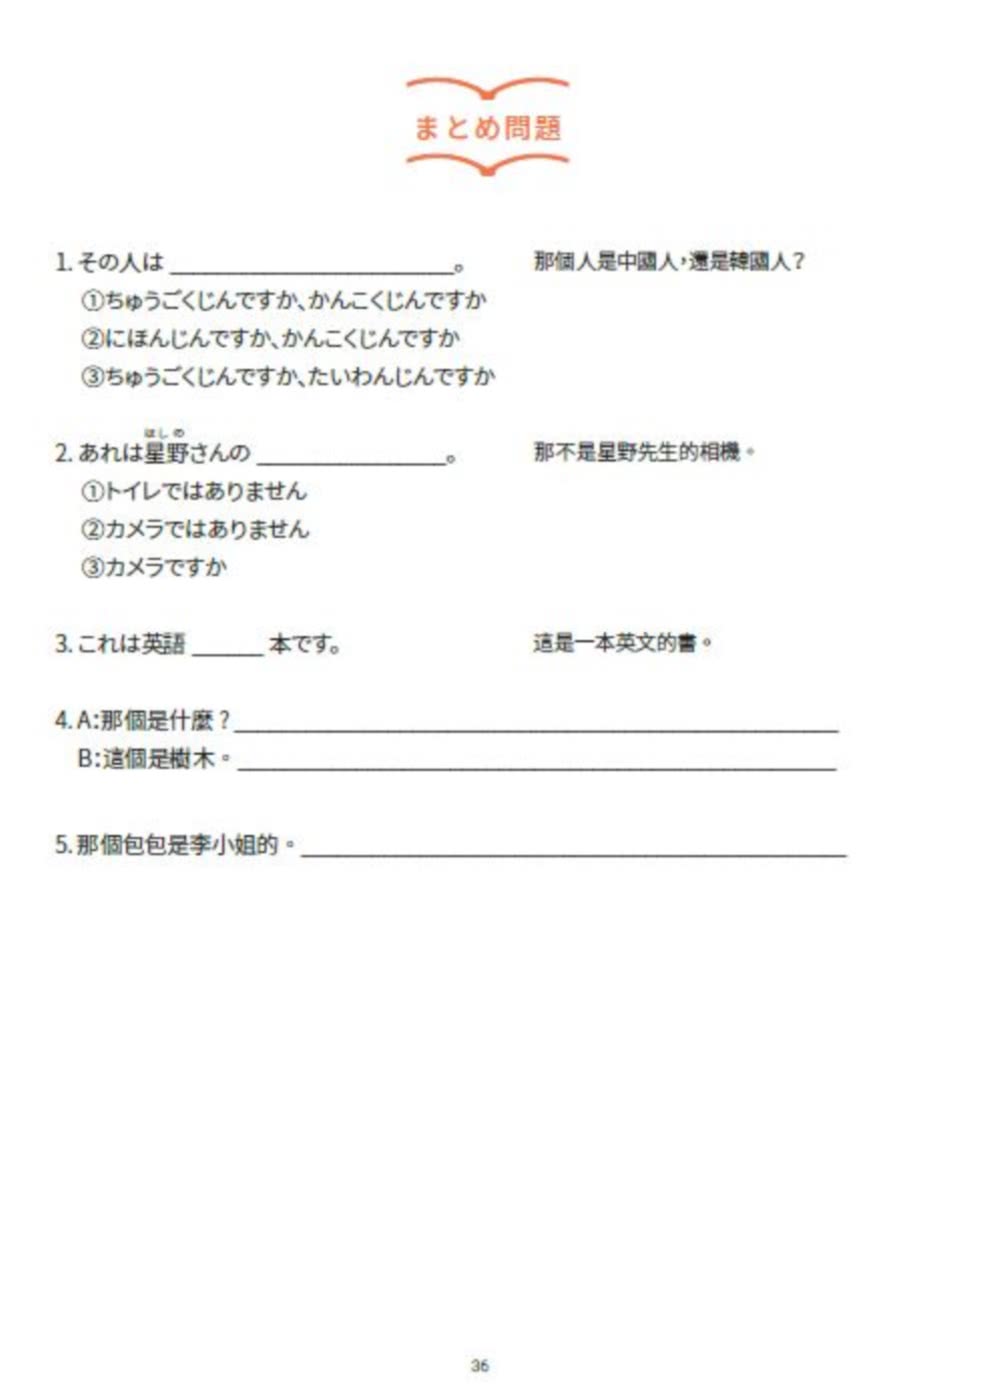 大家一起學習日文吧！王可樂日語初級直達車1：詳盡文法、大量練習題、豐富附錄